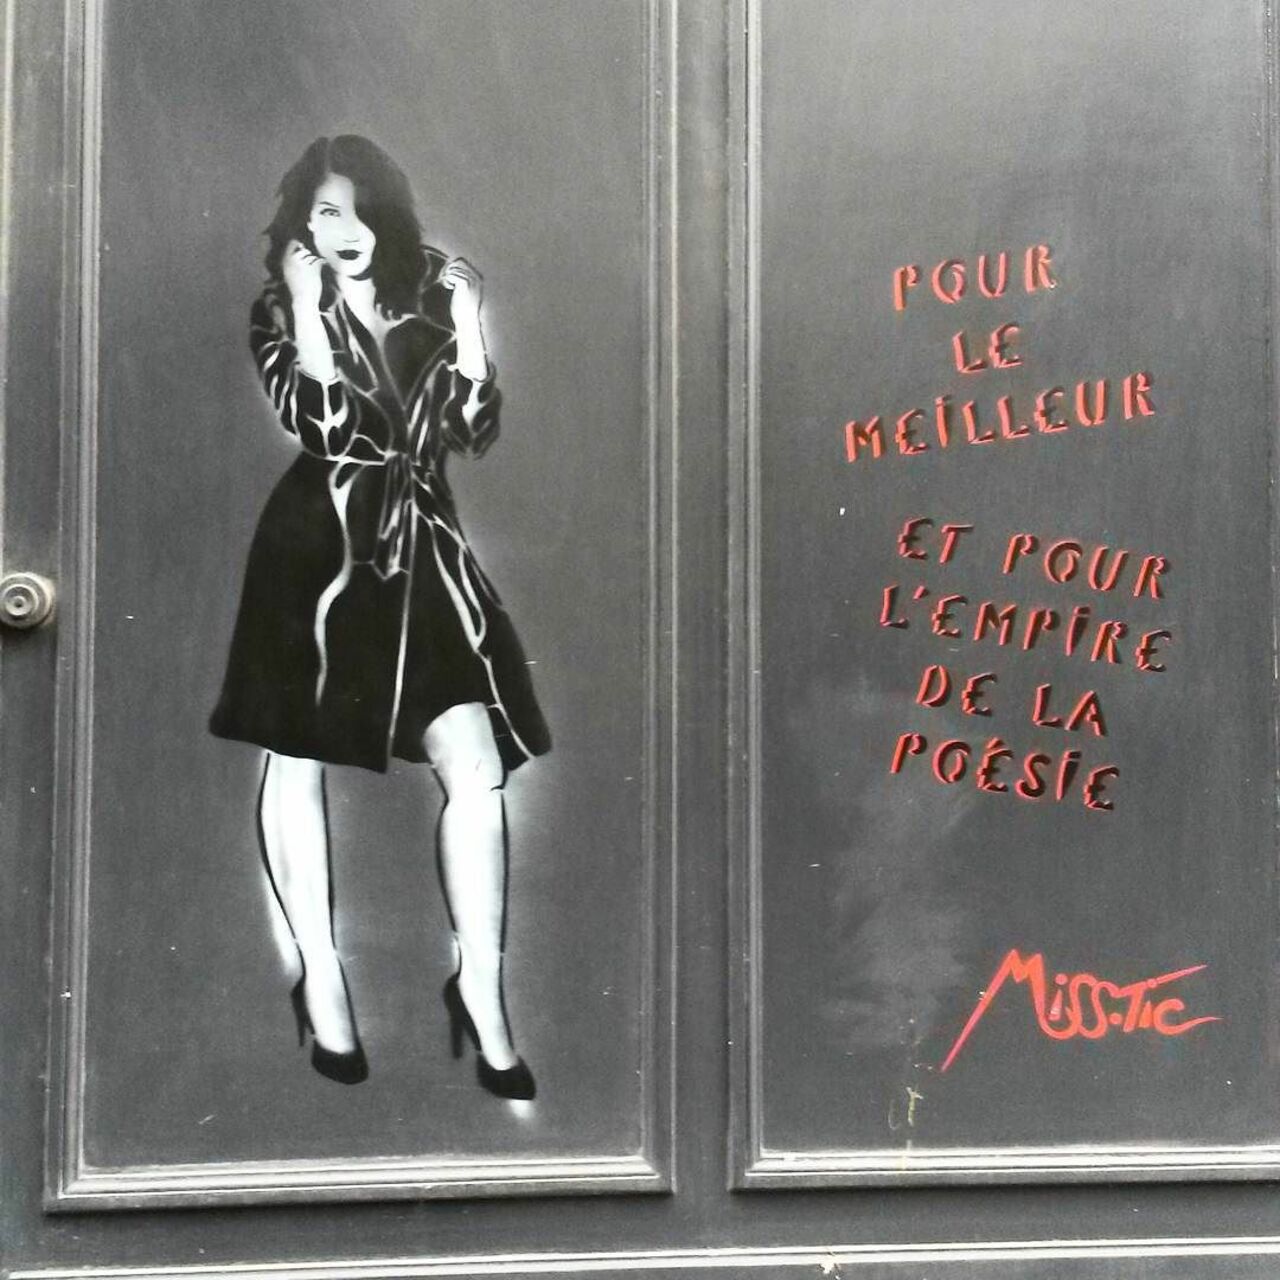 circumjacent_fr: #Paris #graffiti photo by princessepepett http://ift.tt/1MK3A6J #StreetArt https://t.co/GRejYBotFP